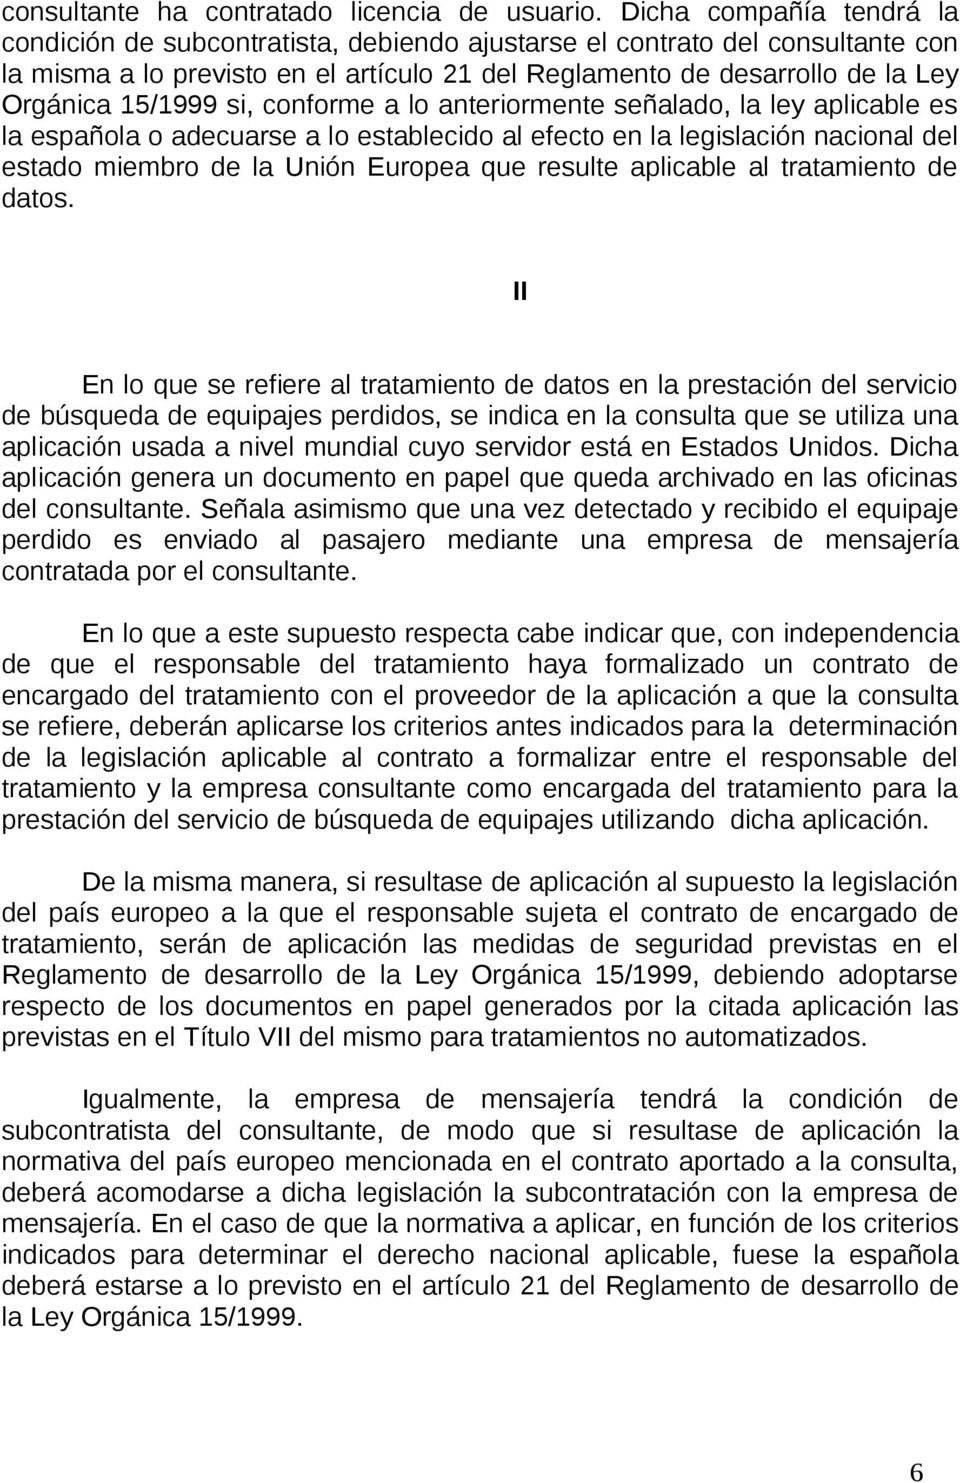 15/1999 si, conforme a lo anteriormente señalado, la ley aplicable es la española o adecuarse a lo establecido al efecto en la legislación nacional del estado miembro de la Unión Europea que resulte